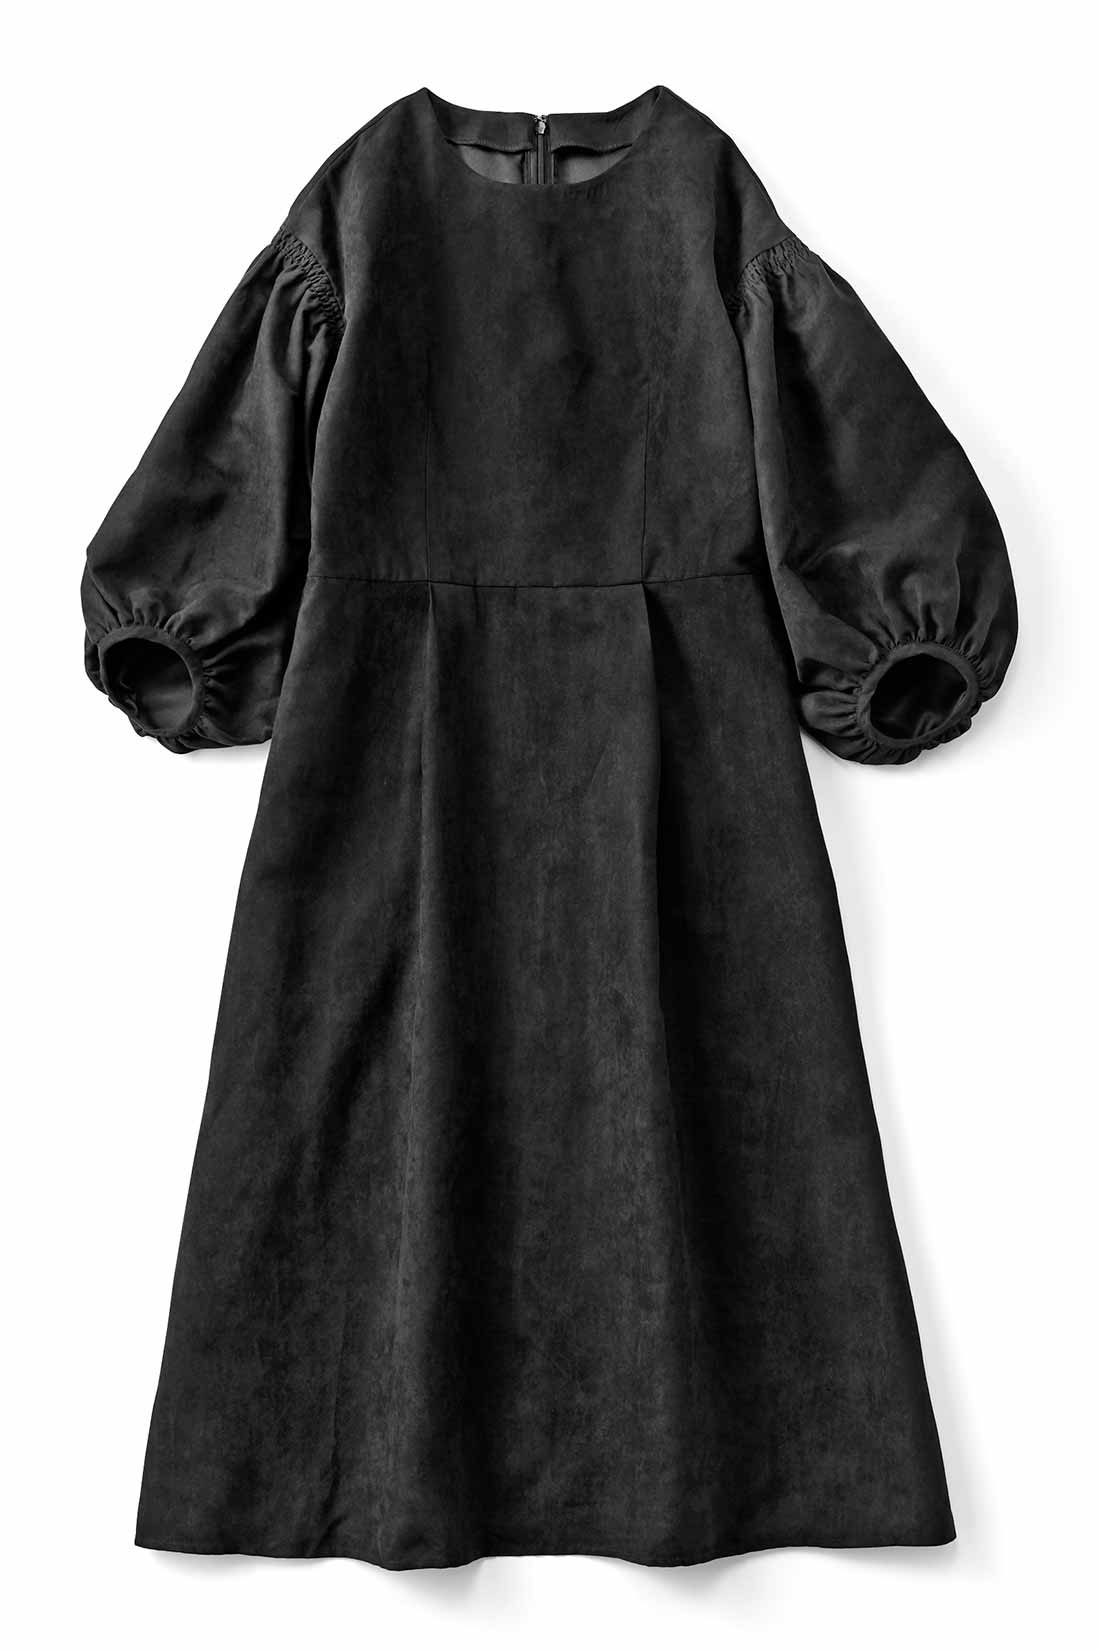 たーーっぷりボリューム袖のブラックドレス ワンピース ワンピース チュニック レディースファッション レディースファッション 洋服の通販 シロップ